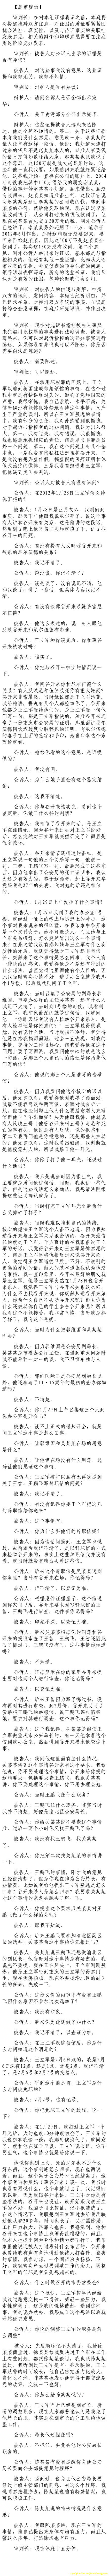 济南市中级法院官方微博公布的8月24日庭审现场记录（7）